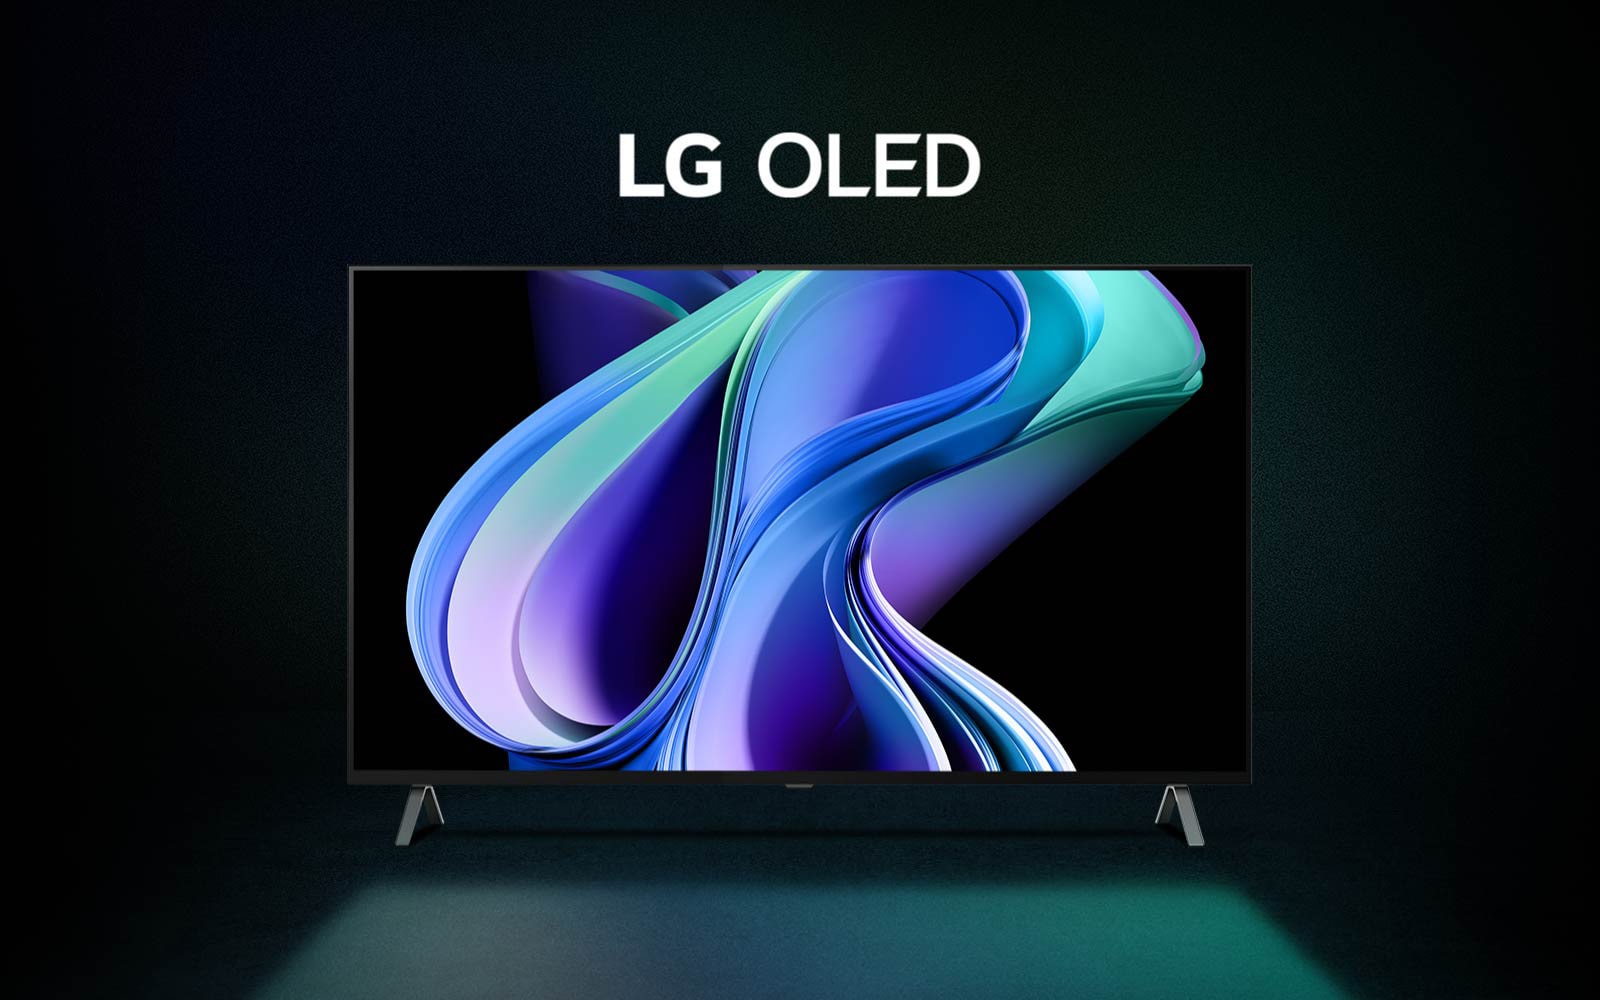 Video về LG OLED A3 xuất hiện trên nền gradient đen, xanh dương và xanh lá cây với tác phẩm nghệ thuật trừu tượng đầy màu sắc tương tự trên màn hình. Hình ảnh phóng to và dòng chữ LG OLED xuất hiện màu trắng.